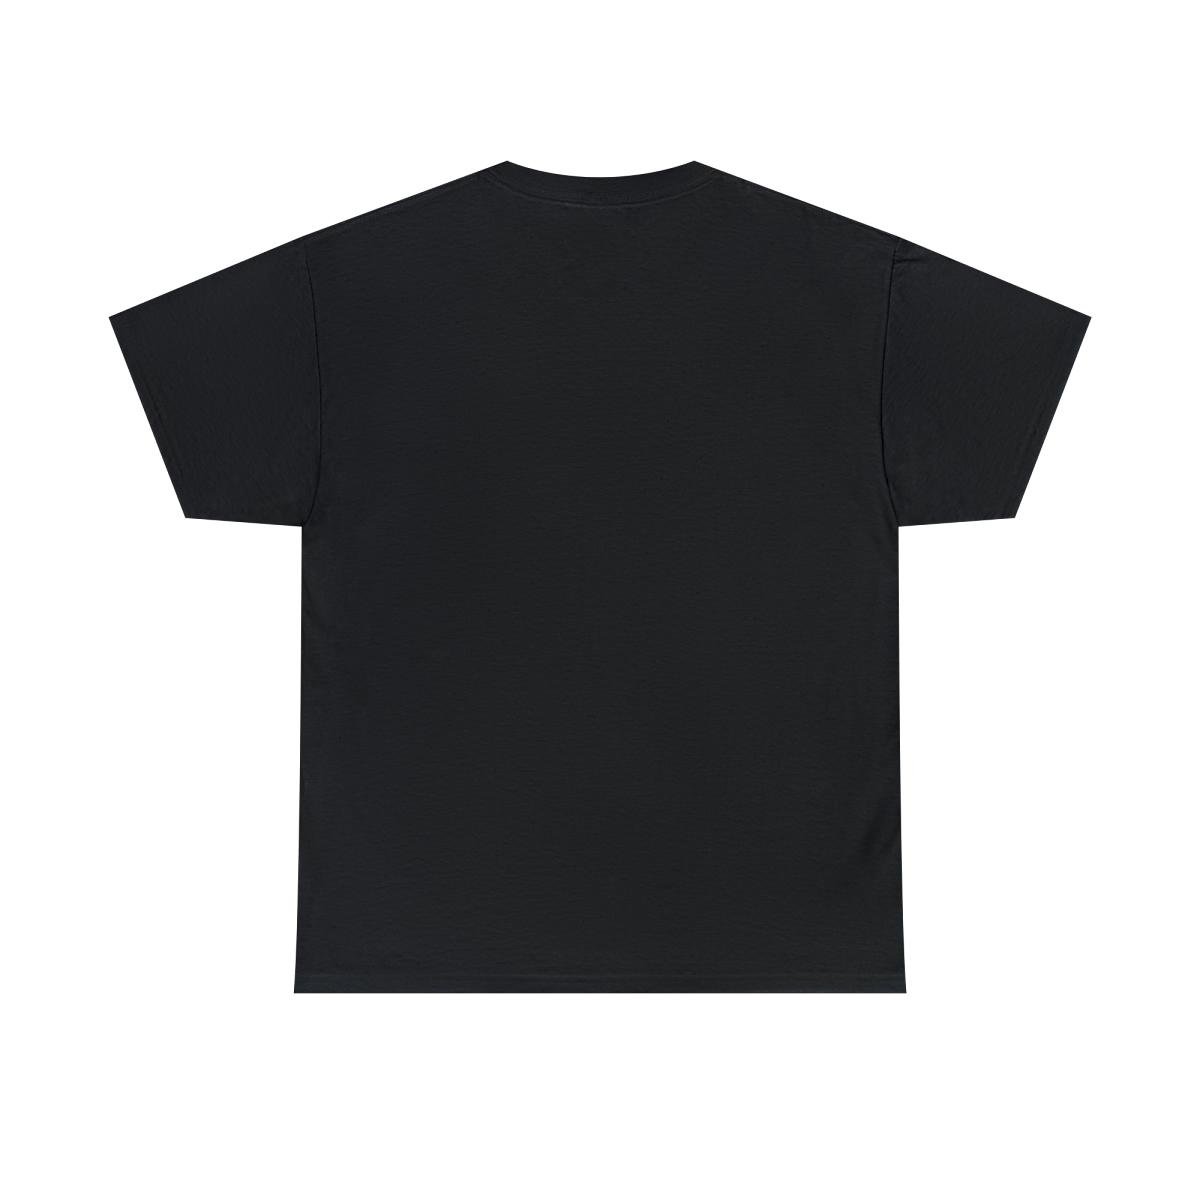 Mawcore – Grey Shield Short Sleeve Tshirt